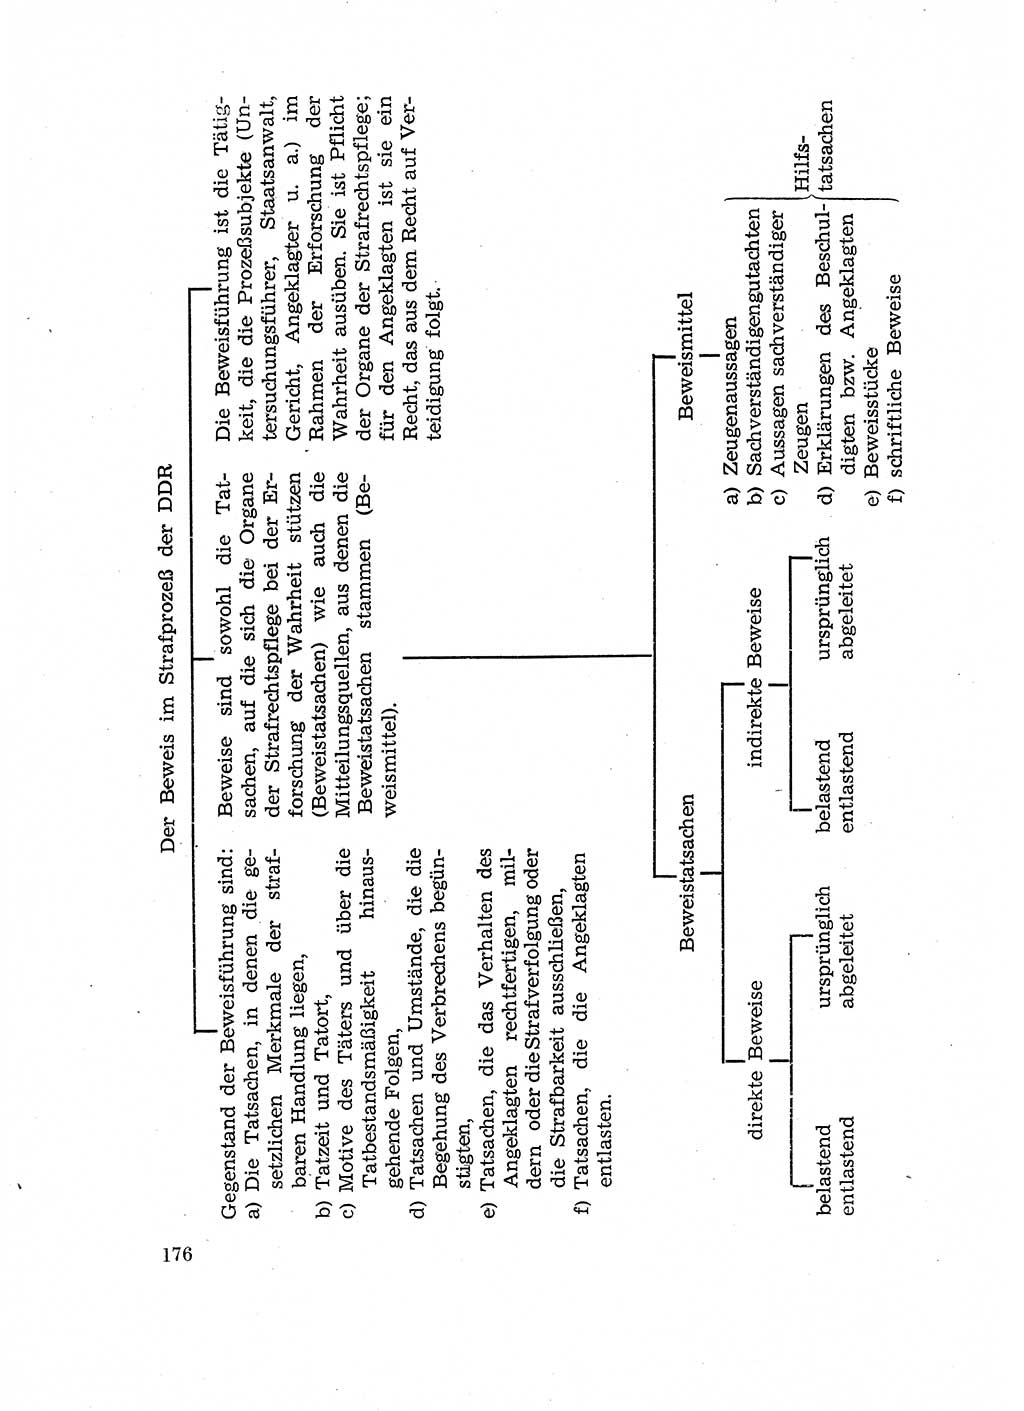 Fragen des Beweisrechts im Strafprozess [Deutsche Demokratische Republik (DDR)] 1956, Seite 176 (Fr. BeweisR. Str.-Proz. DDR 1956, S. 176)